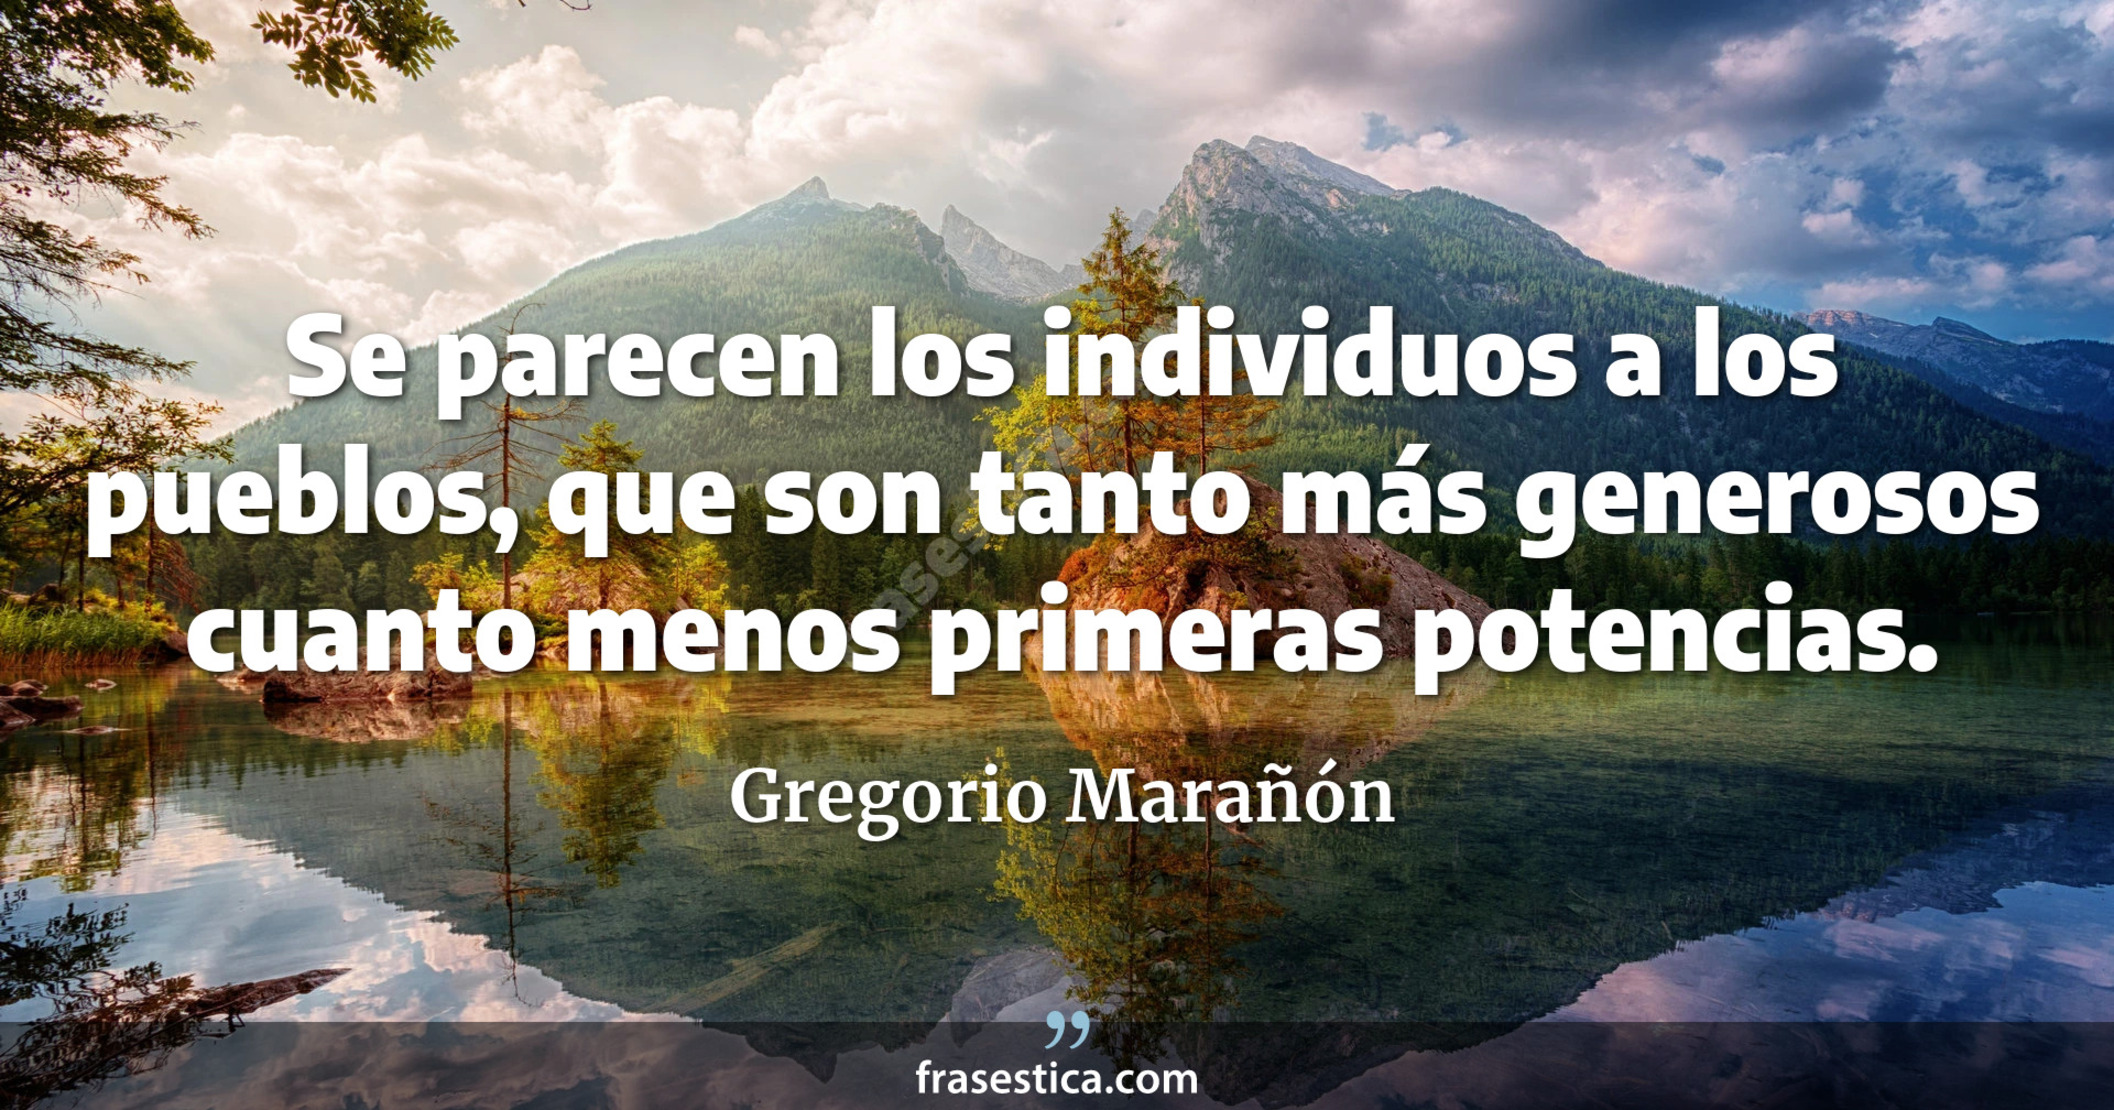 Se parecen los individuos a los pueblos, que son tanto más generosos cuanto menos primeras potencias. - Gregorio Marañón